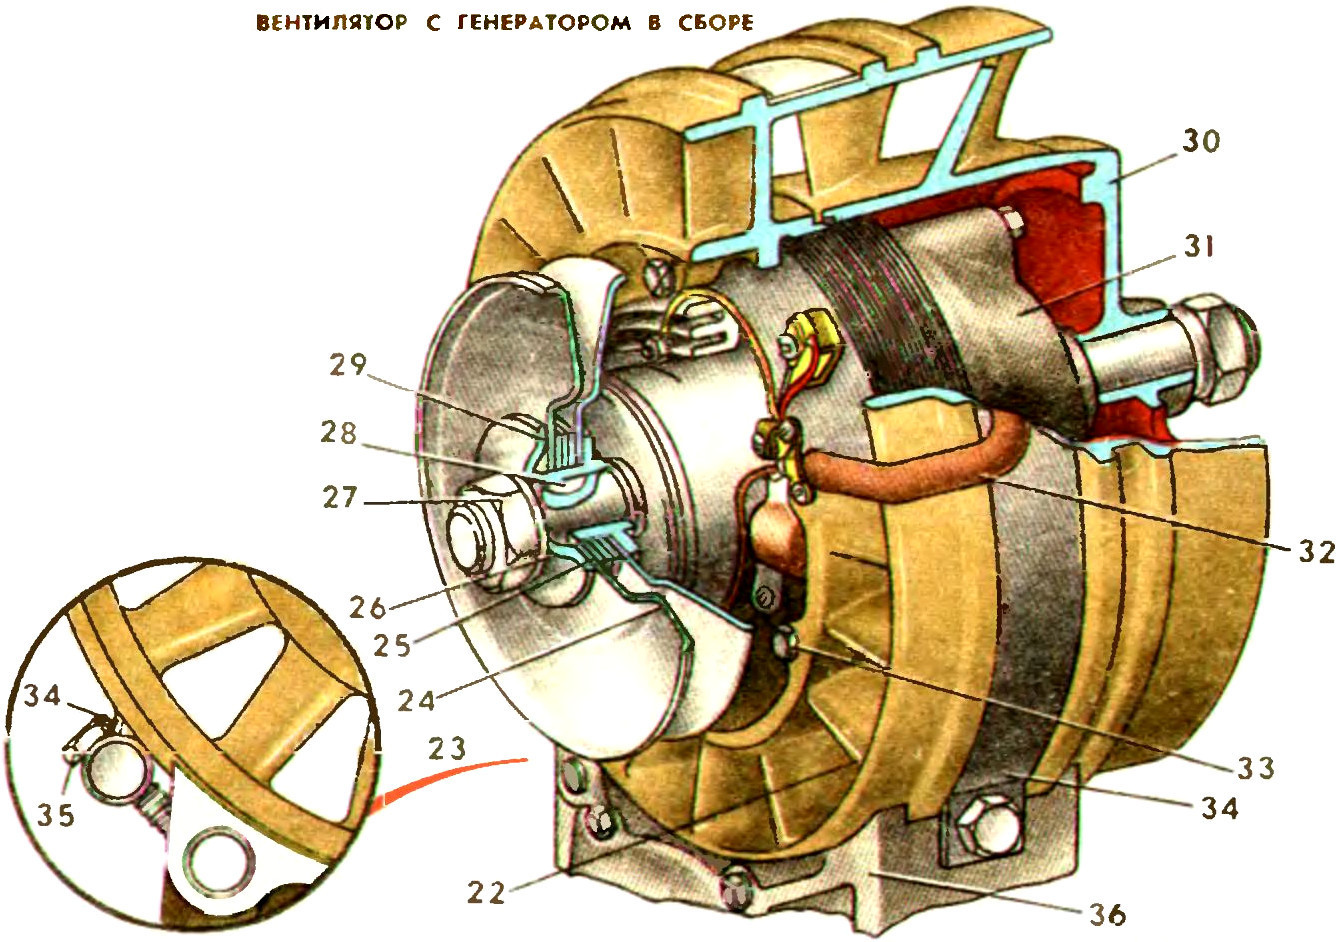 Вентилятор системы охлаждения двигателя МеМЗ-966Г автомобиля ЗАЗ-968М-005 Запорожец в сборе с генератором